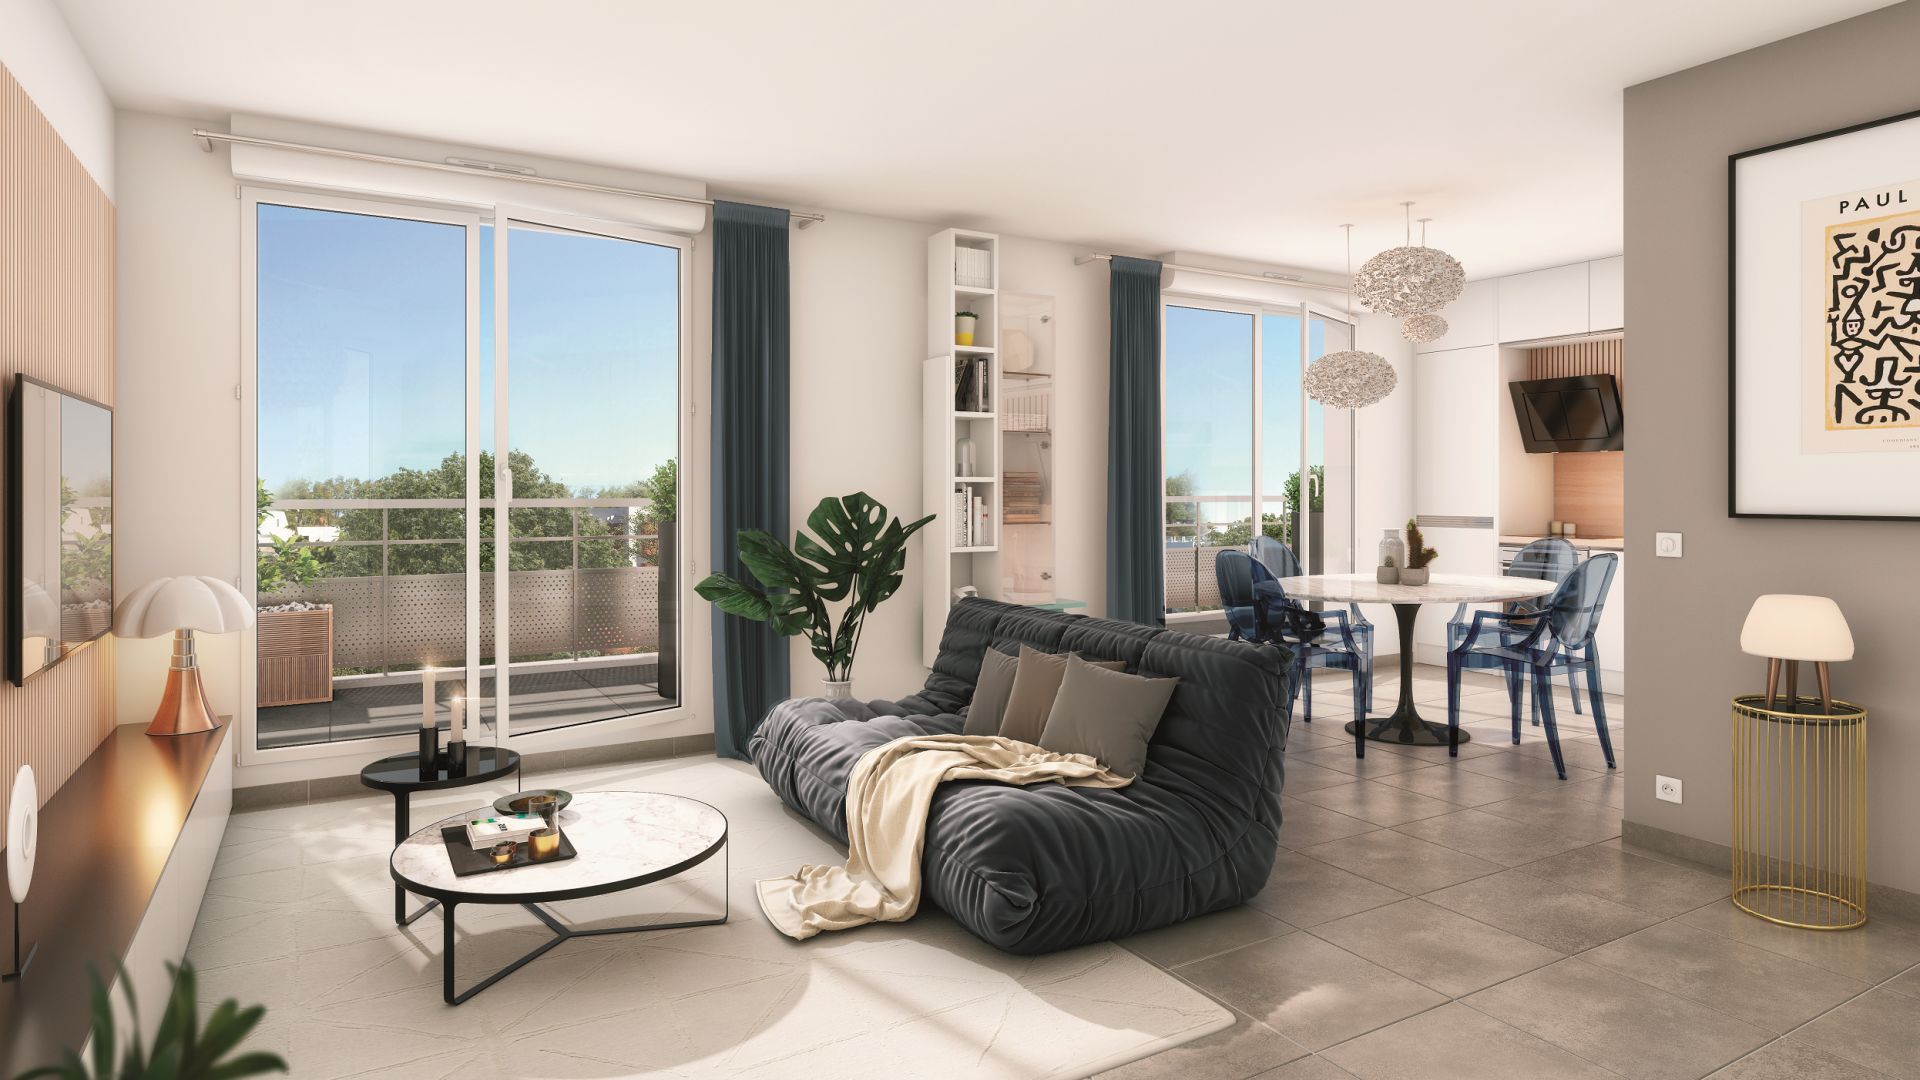 Greencity immobilier - achat appartements neufs du T1Bis au T5 - Résidence Marianne - 78680 Epone  - vue intérieure